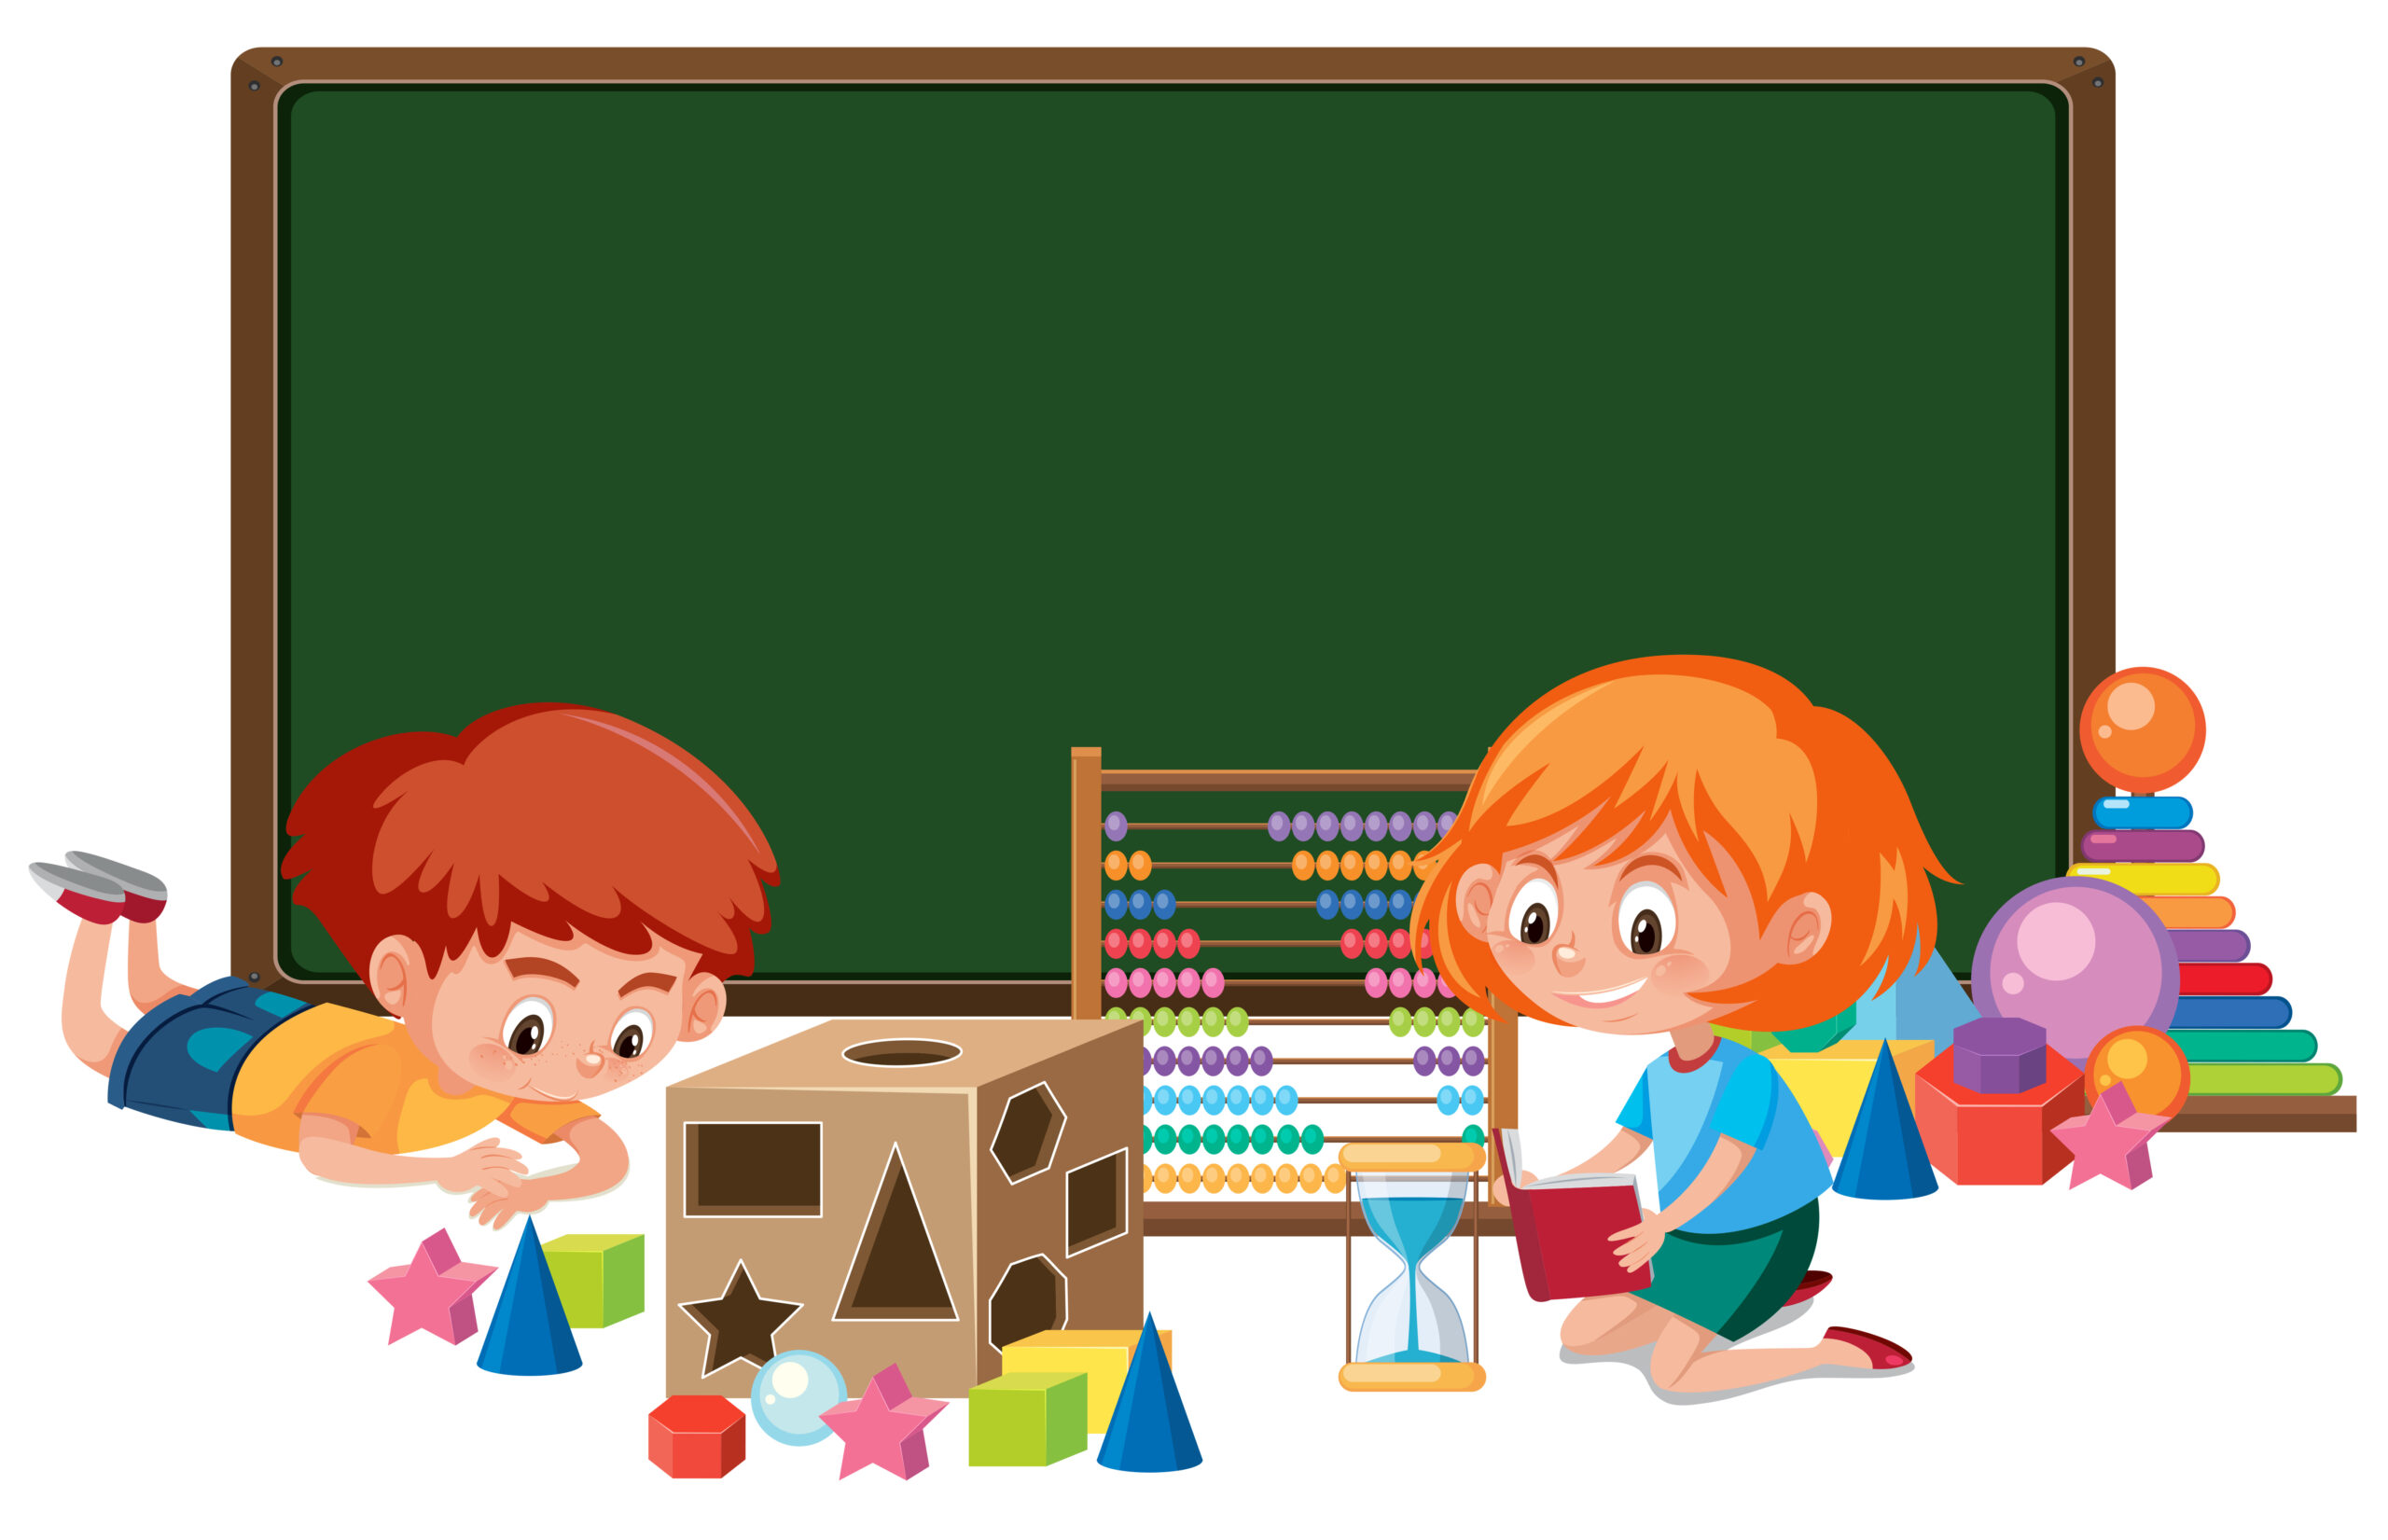 Como explicar adição na educação infantil? Confira algumas dicas, sugestões, brincadeiras e práticas para ensinar a somar. 